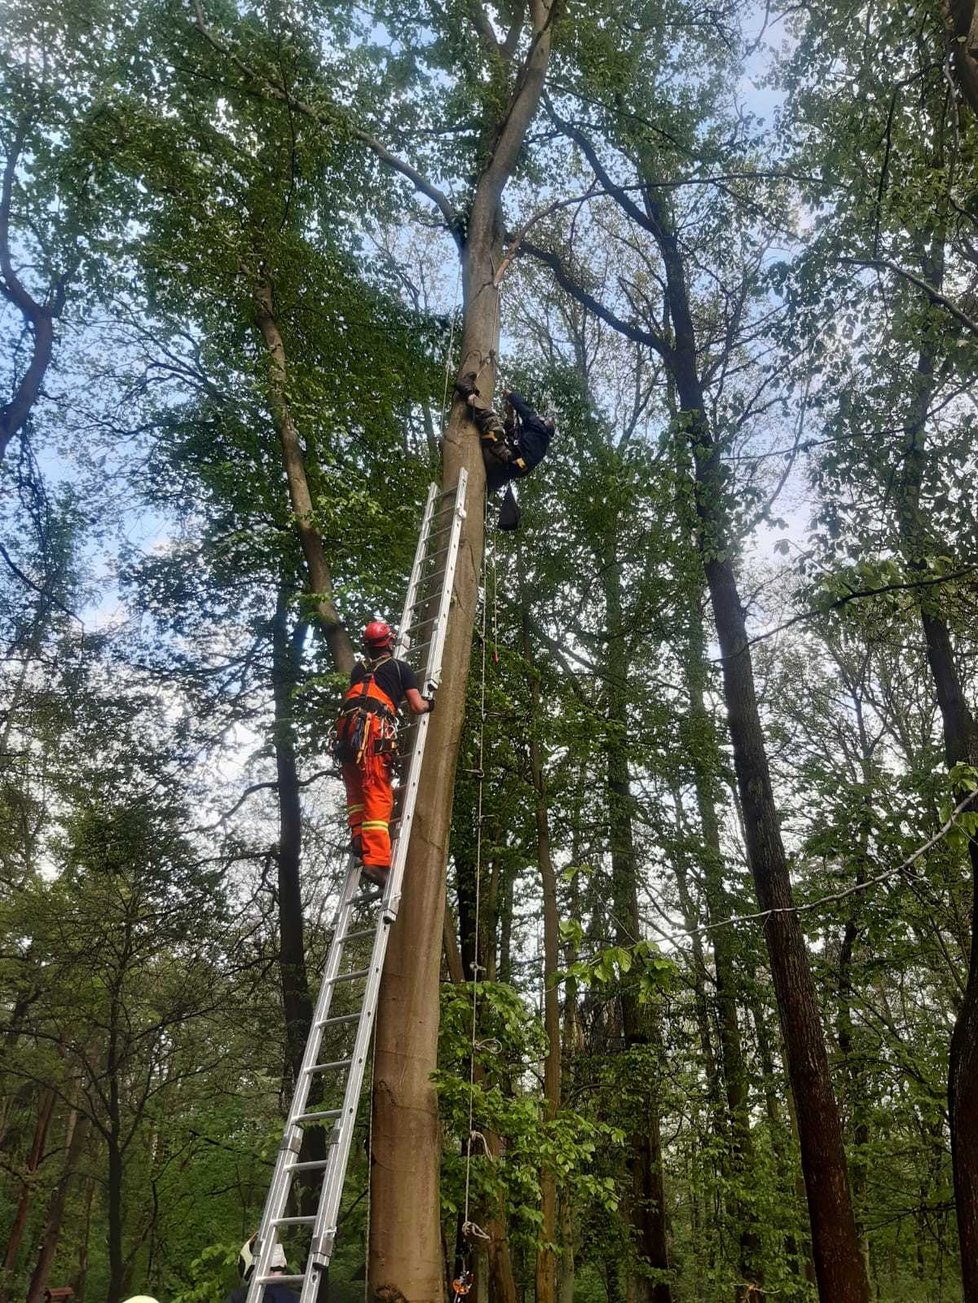 Ornitolog při kroužkování mláďat datla zůstal viset na stromě: Na pomoc mu vyrazili hasiči